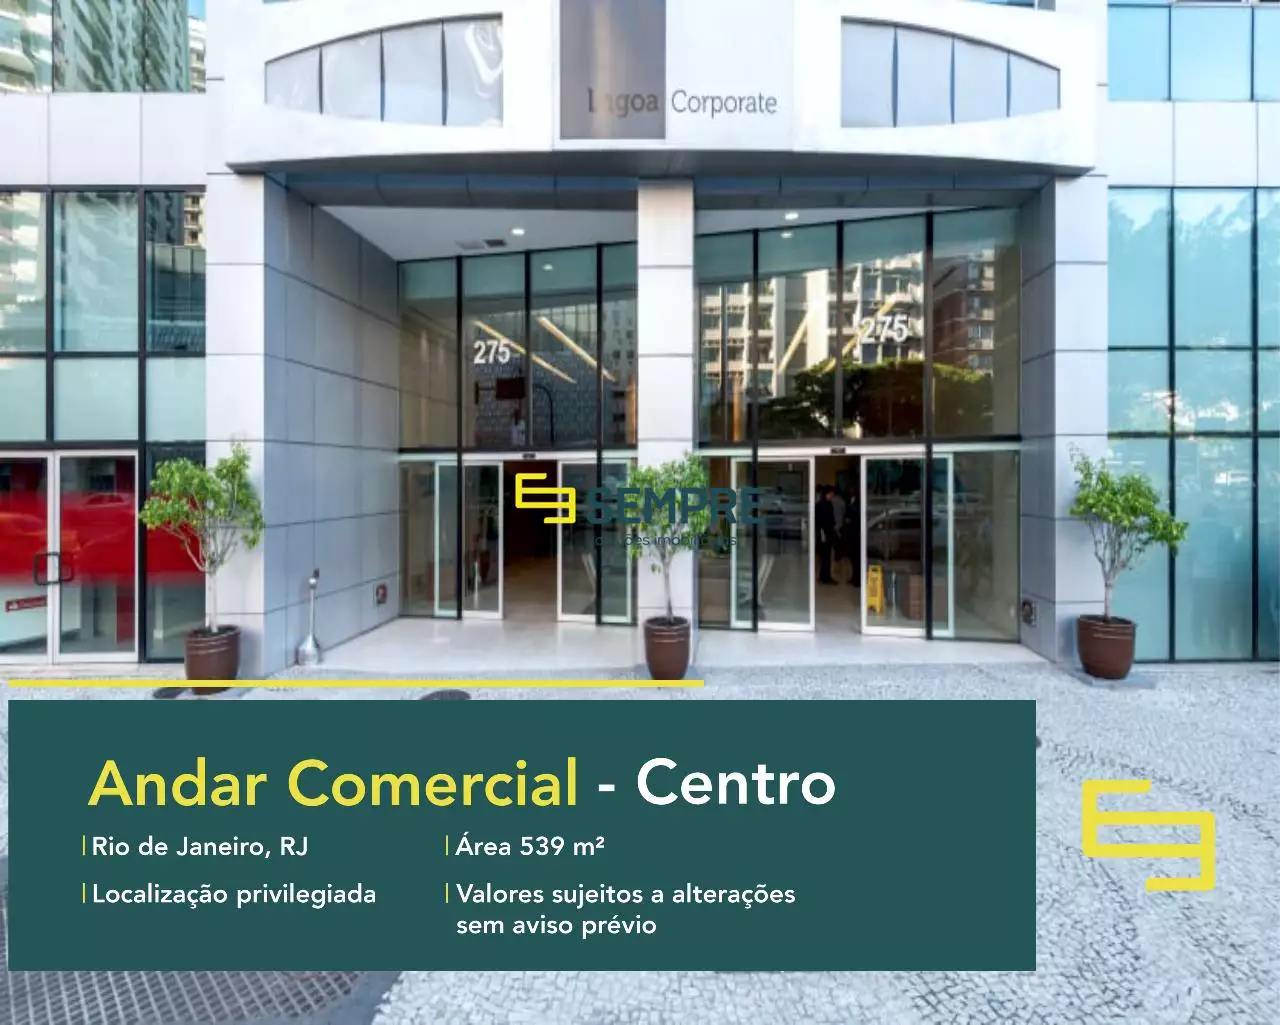 Andar comercial no Lagoa Corporate para locação - RJ, excelente localização. O estabelecimento comercial conta com área de 539,45 m².